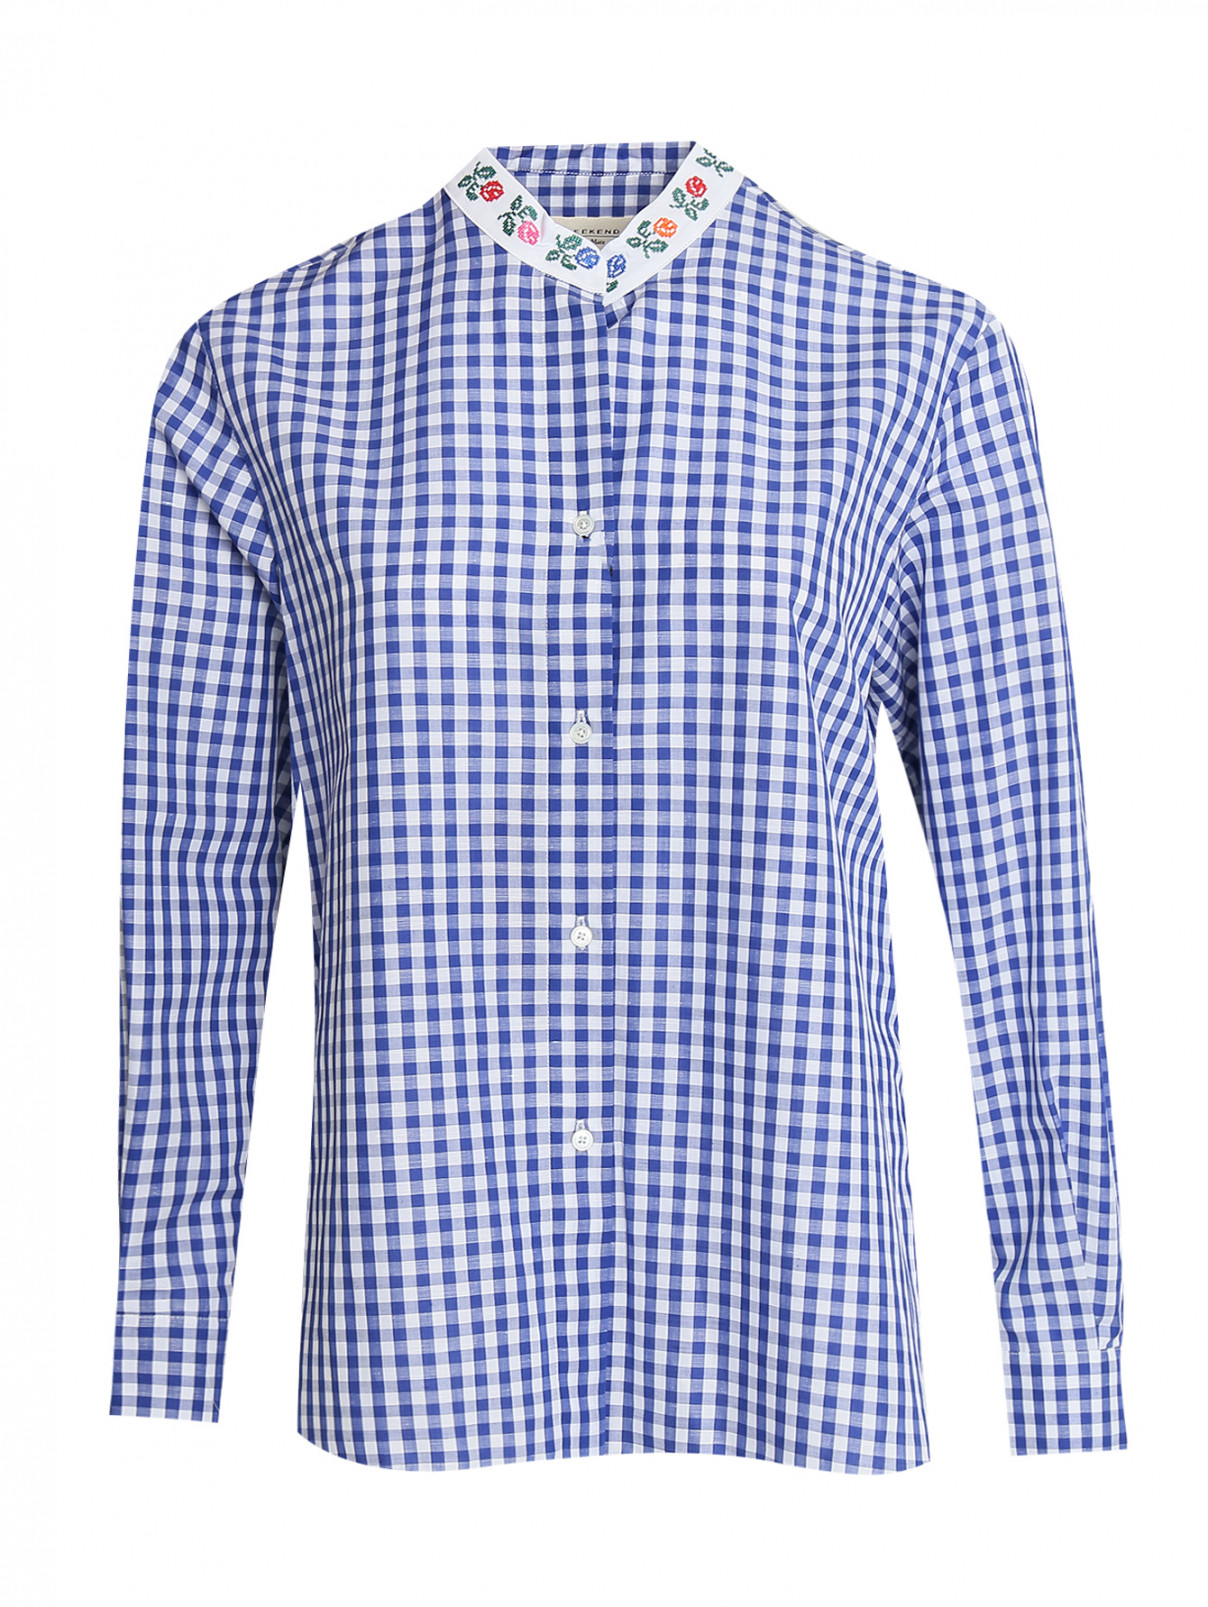 Рубашка в клетку из хлопка и льна Weekend Max Mara  –  Общий вид  – Цвет:  Синий